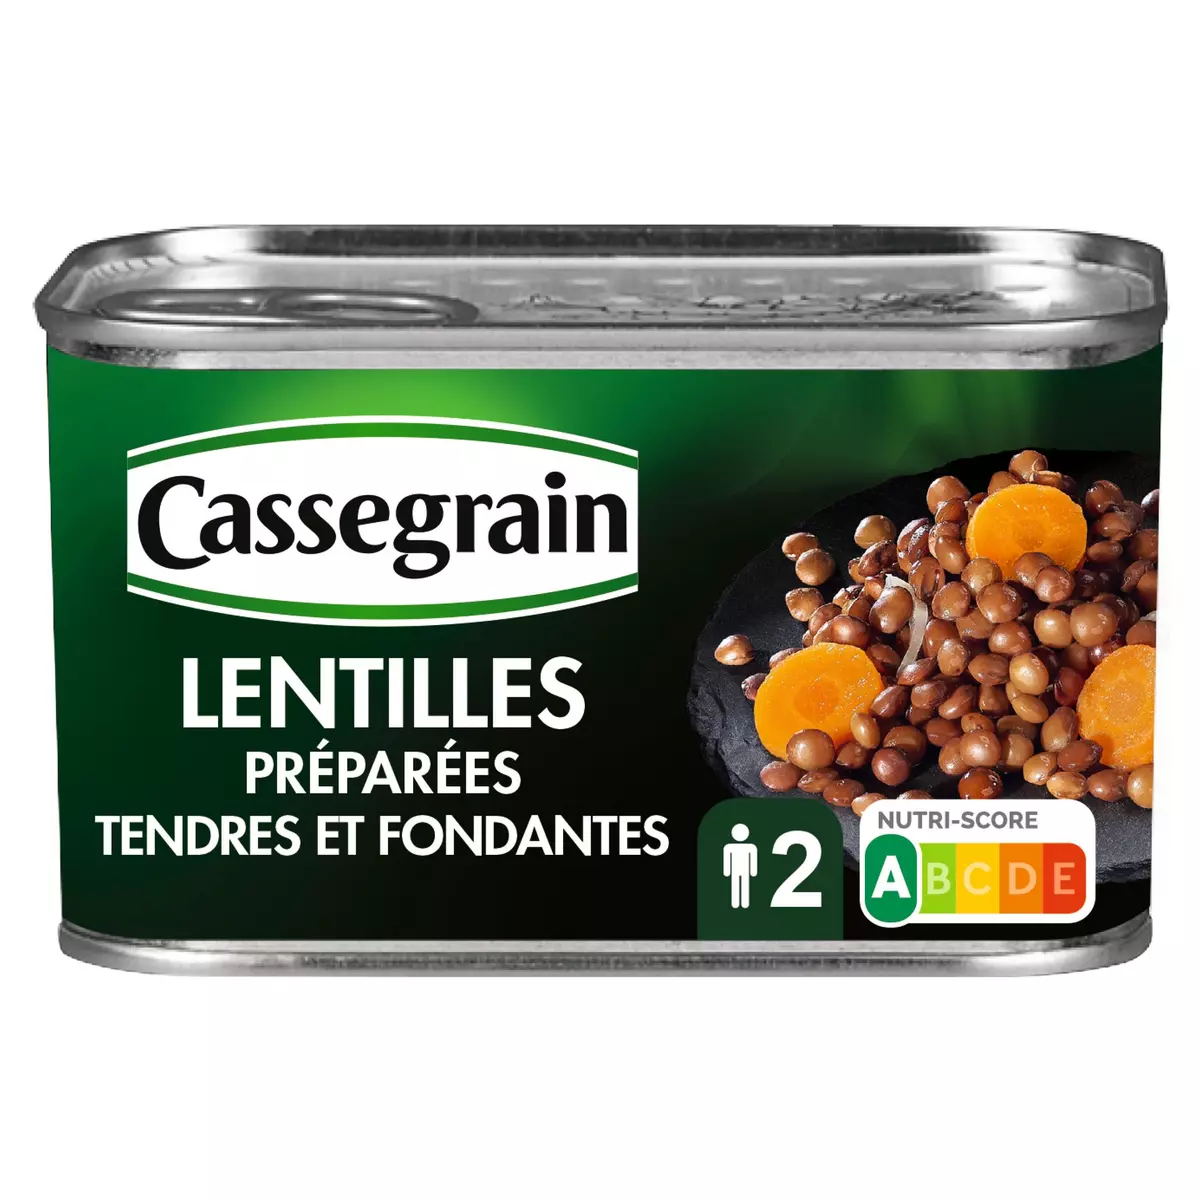 CASSEGRAIN Lentilles préparées tendres et fondantes 265g